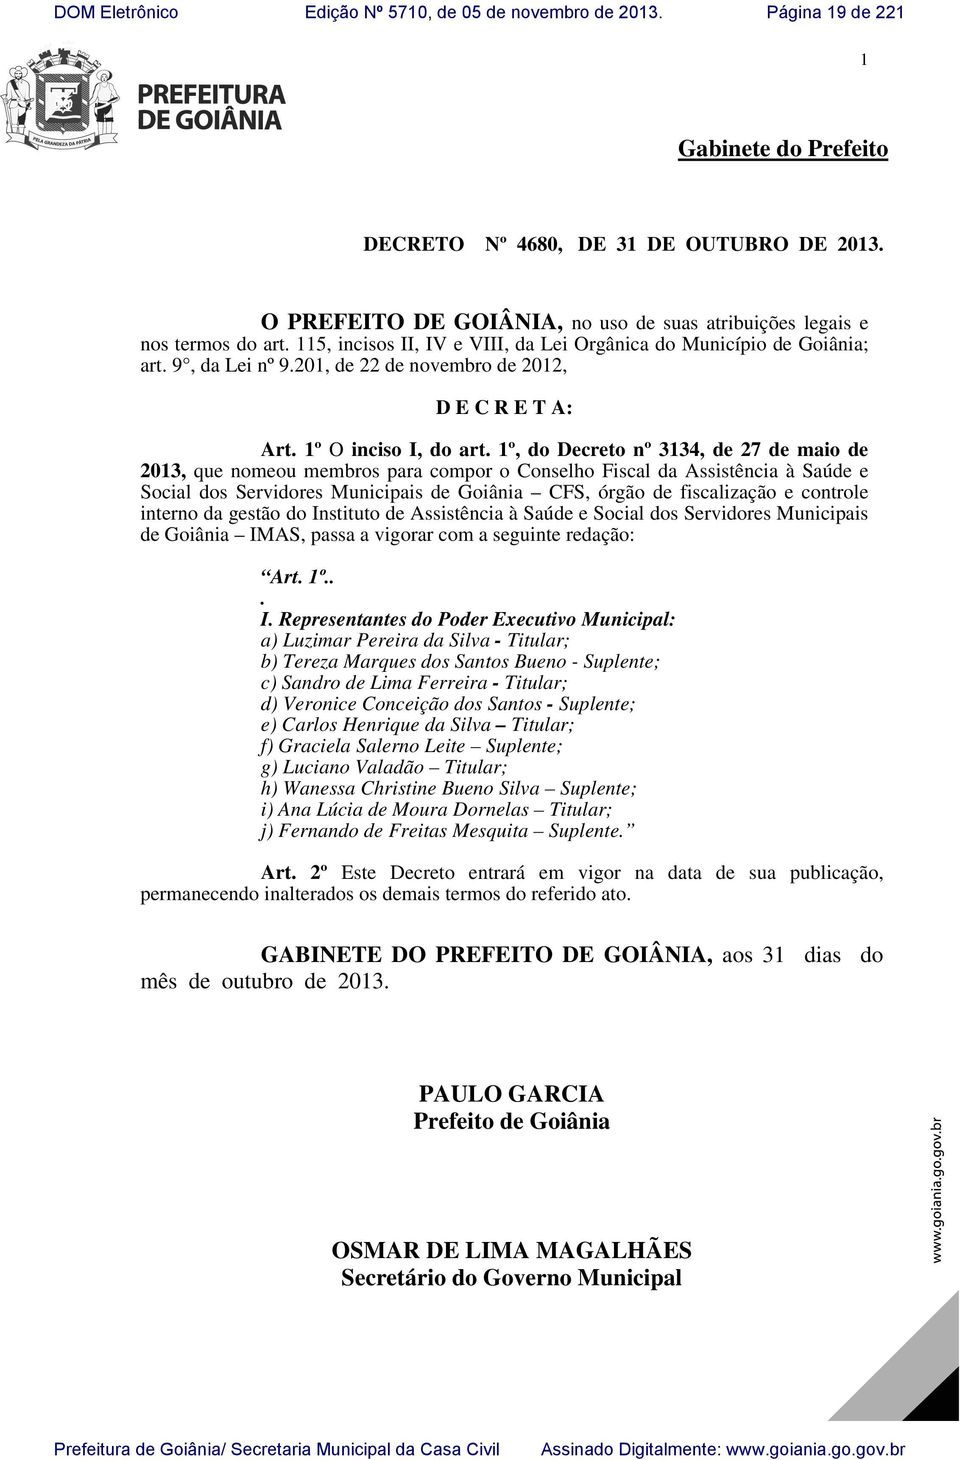 1º, do Decreto nº 3134, de 27 de maio de 2013, que nomeou membros para compor o Conselho Fiscal da Assistência à Saúde e Social dos Servidores Municipais de Goiânia CFS, órgão de fiscalização e